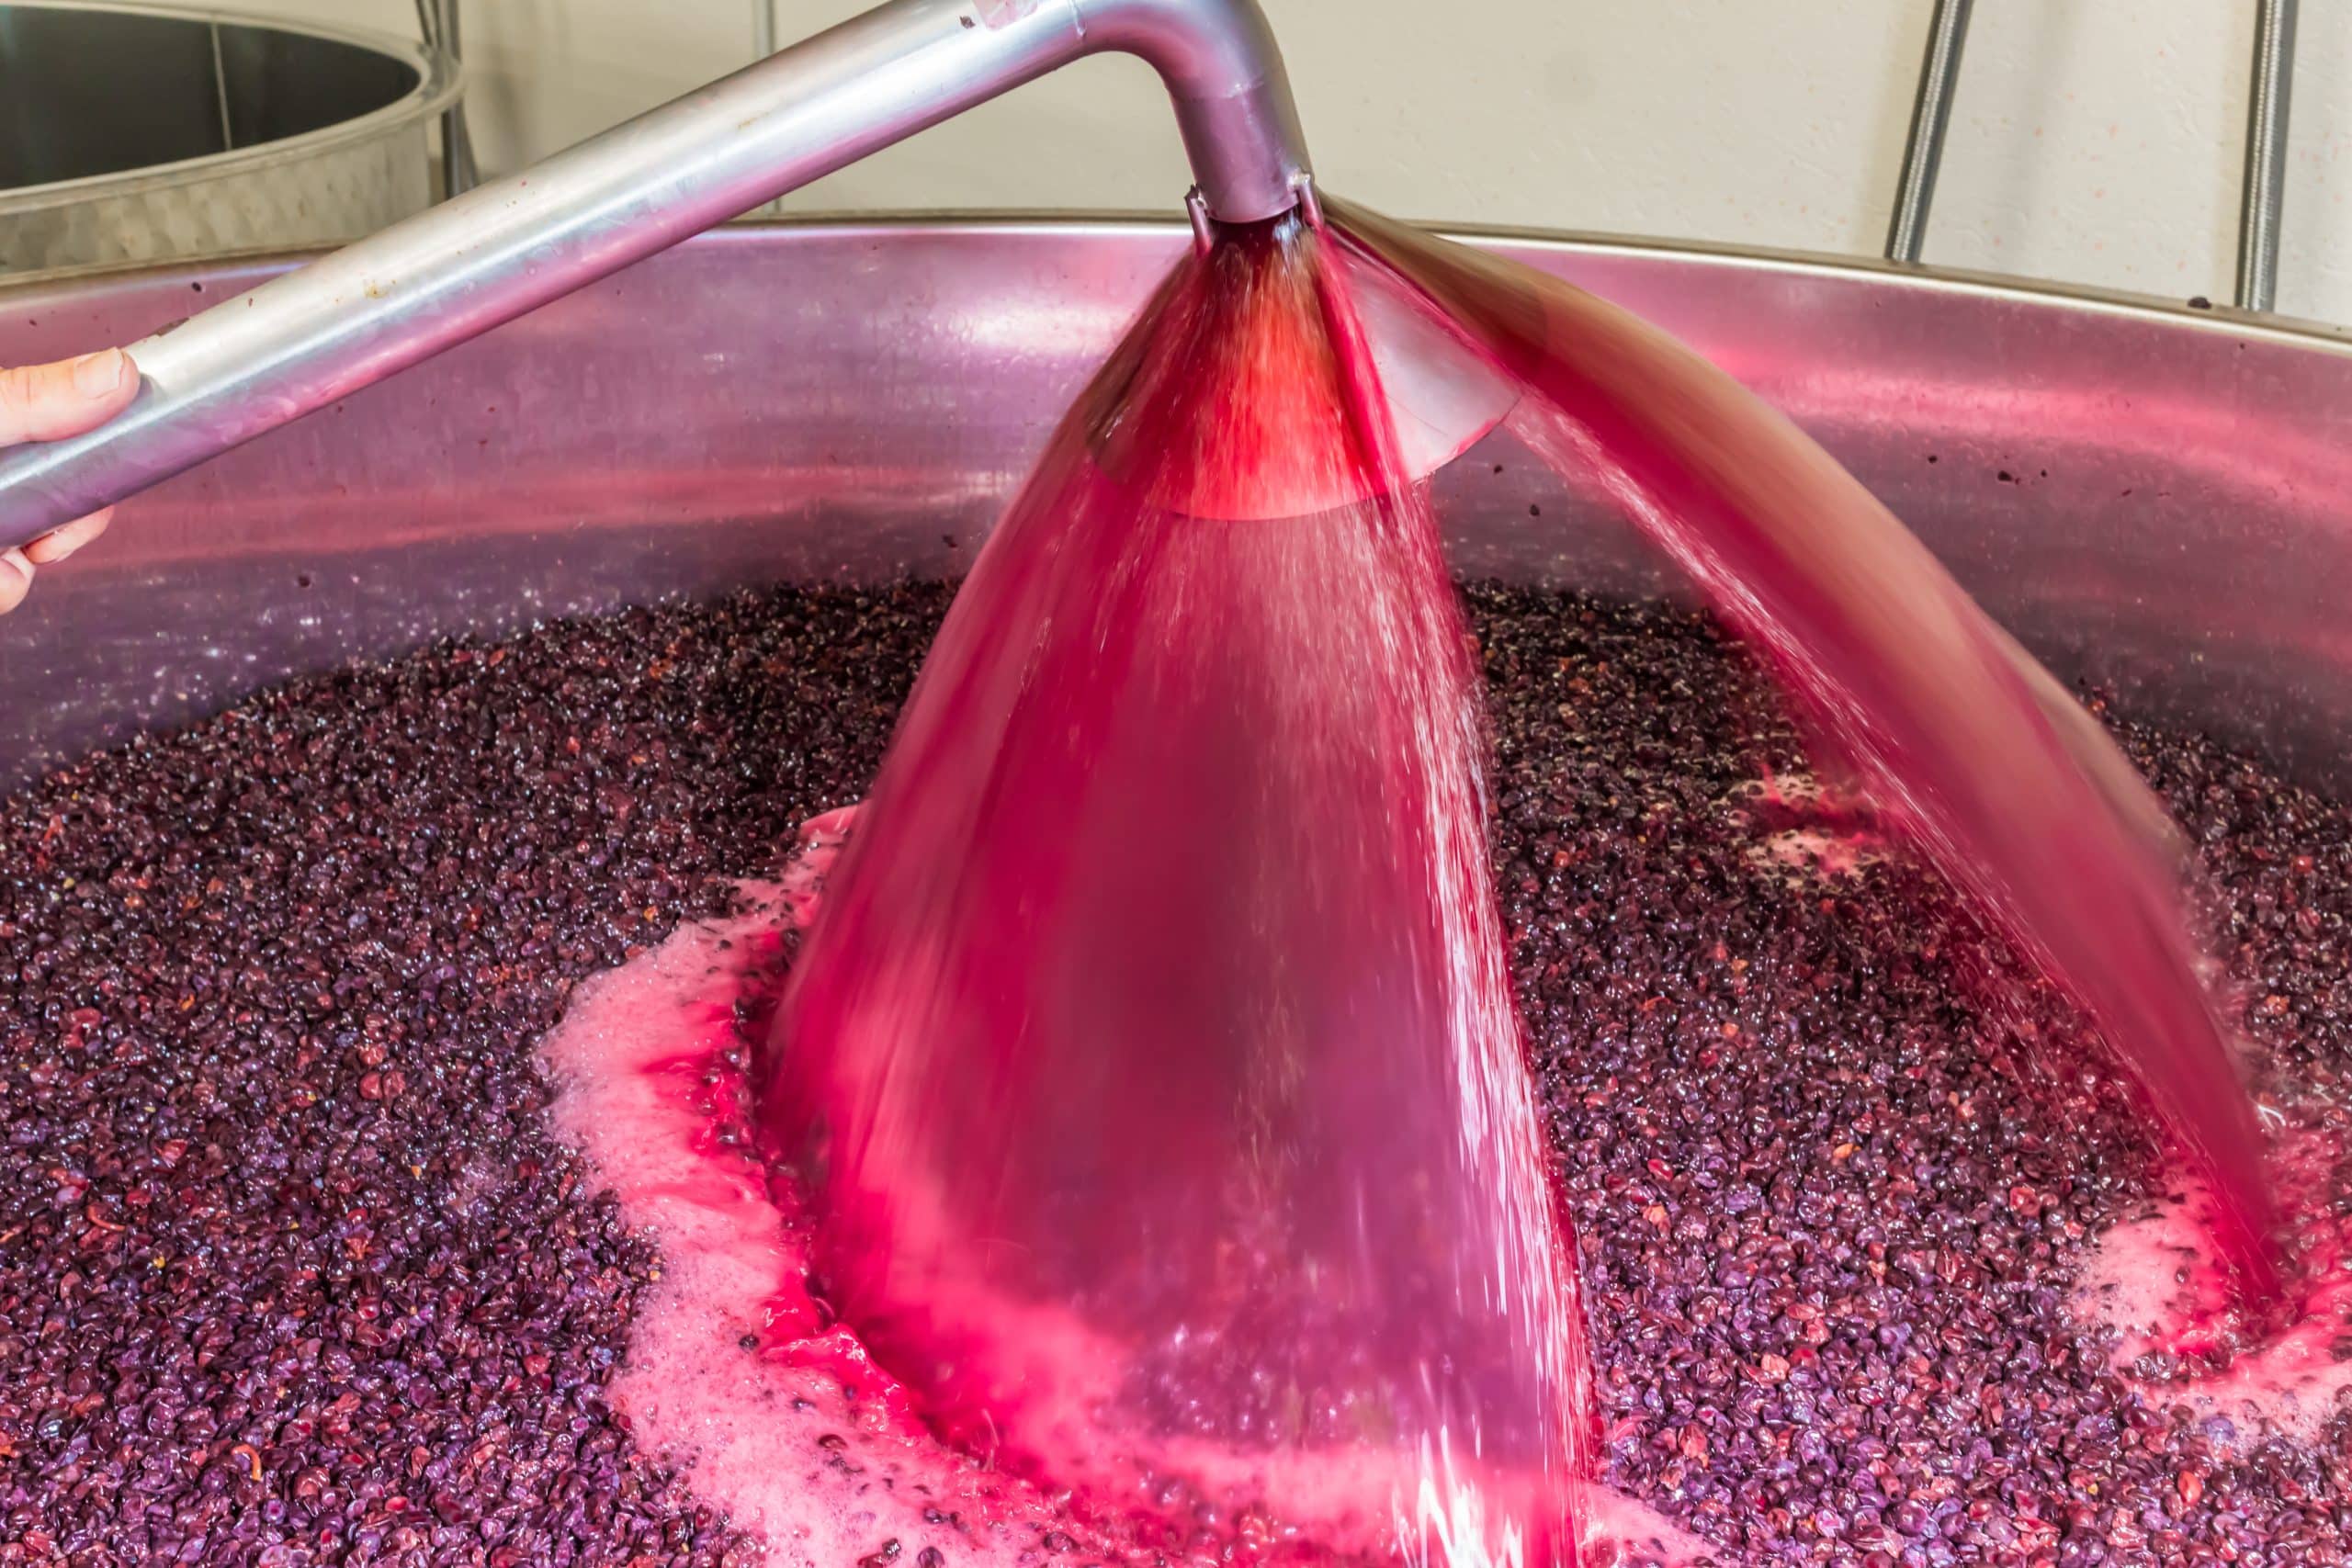 INOCULBACT Nuevo proyecto de I+D para controlar la fermentación maloláctica de los vinos